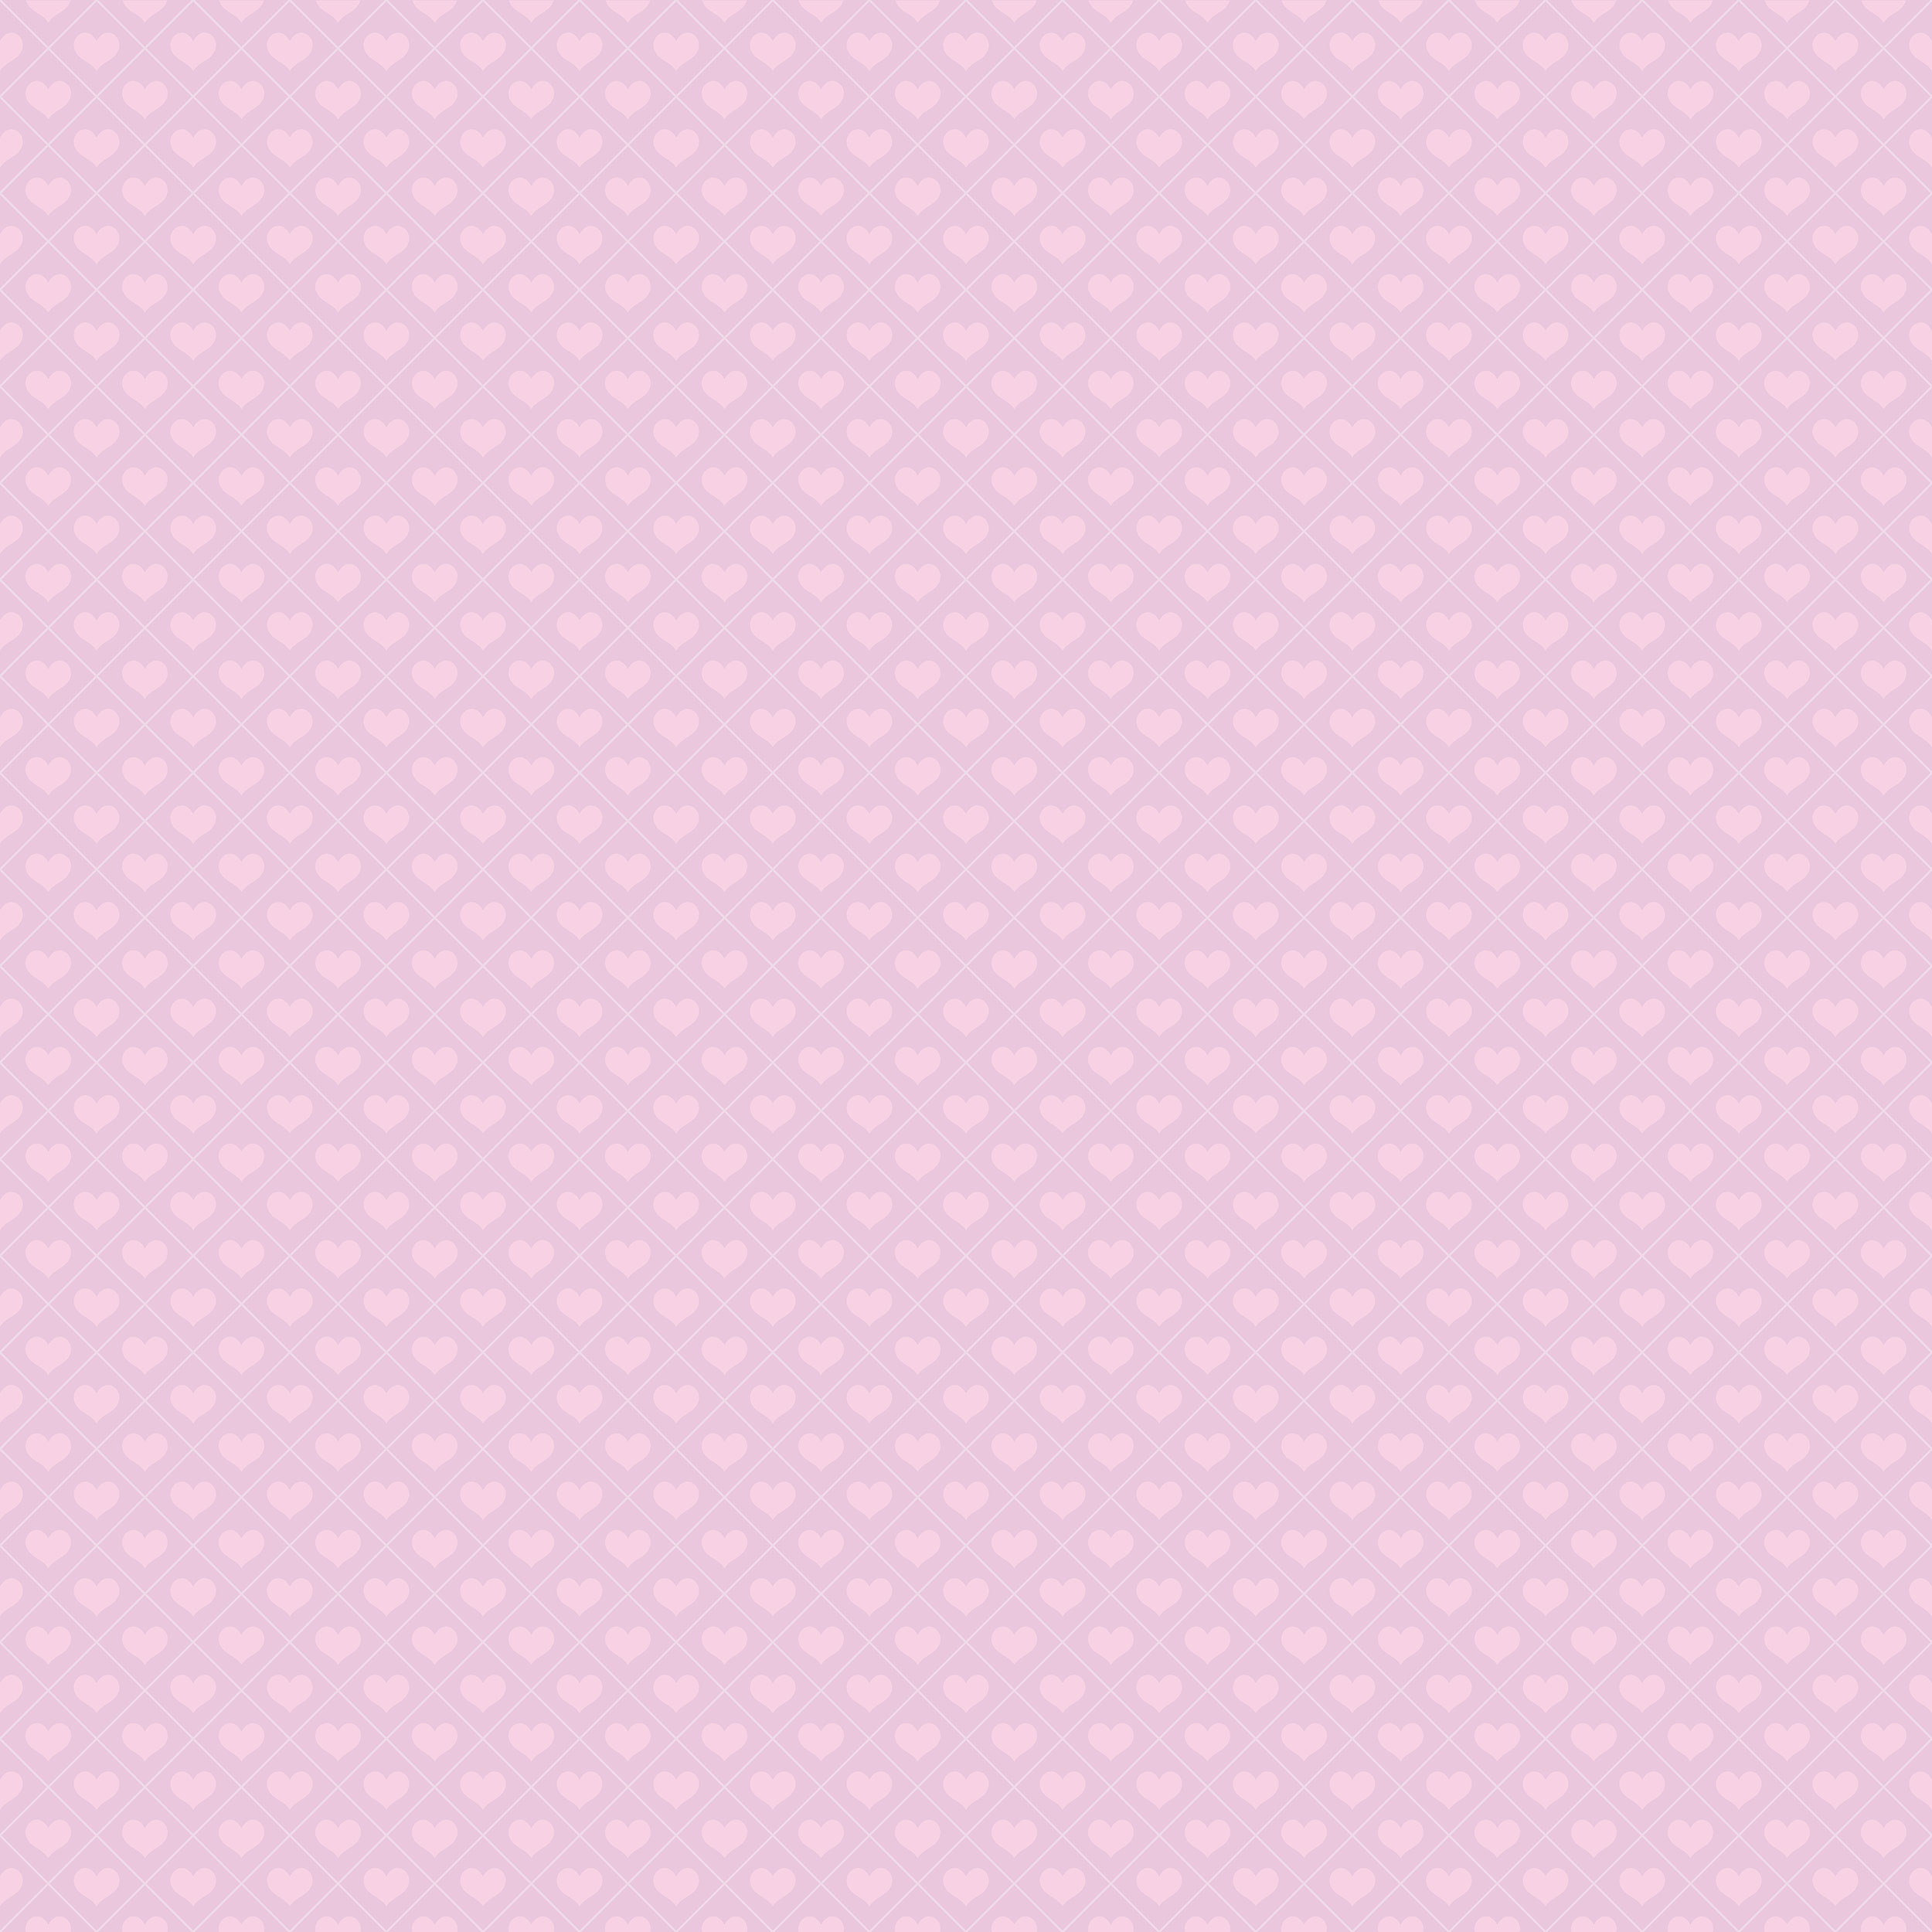 ハートデザインの壁紙 背景素材 無料画像no 262 二色ハート ピンク